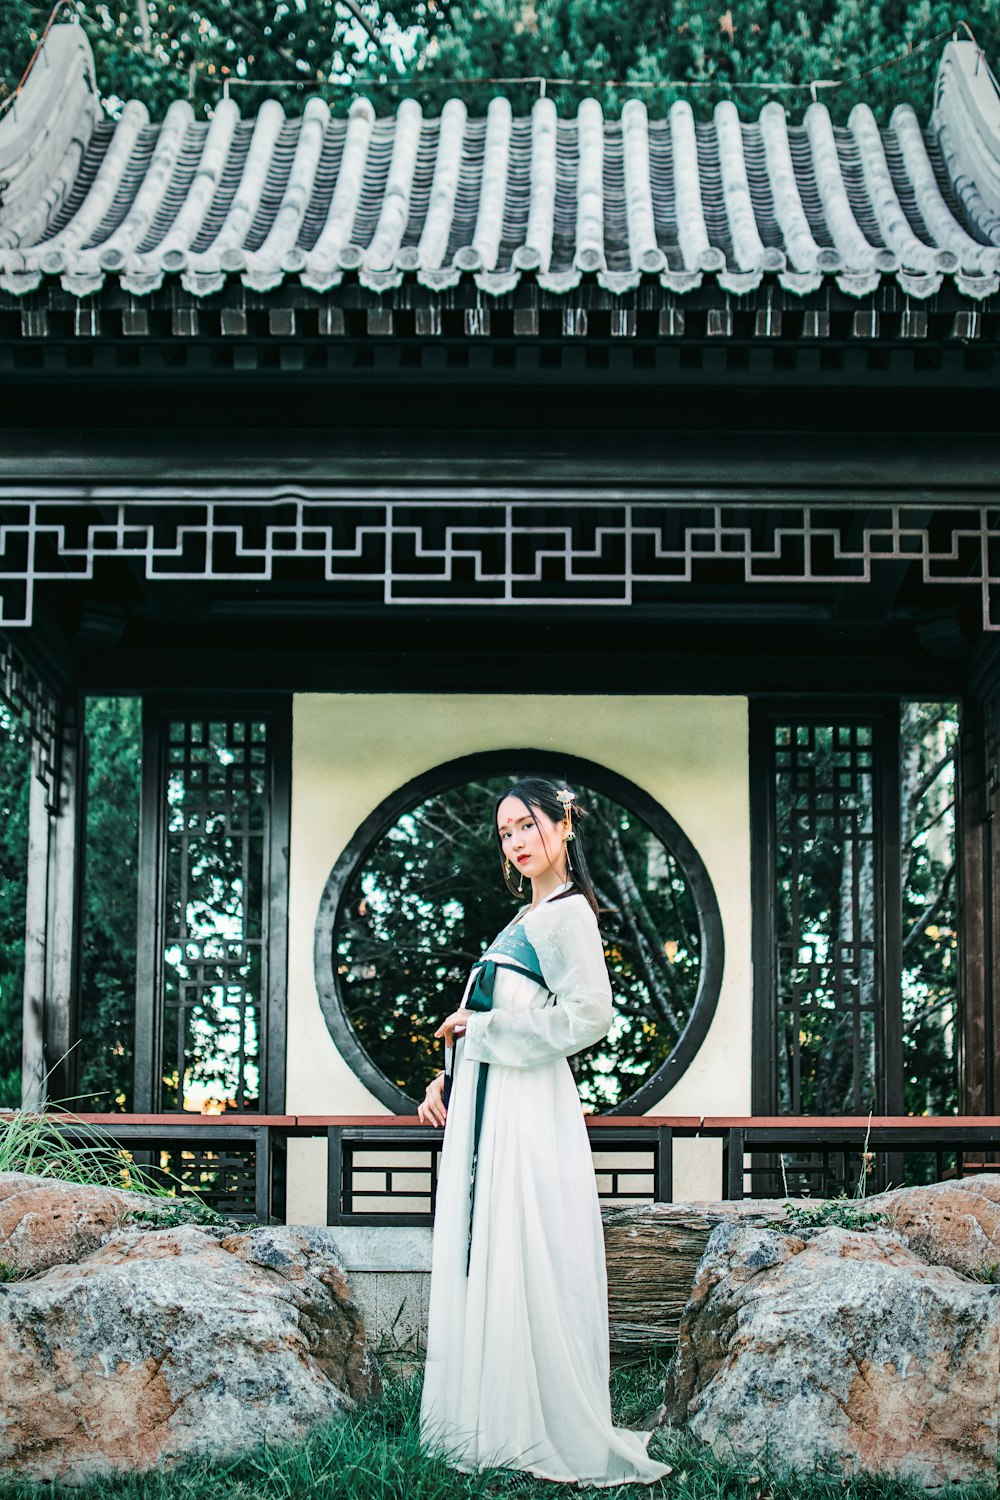 Mujer vestida de hakama blanco frente al templo blanco y negro